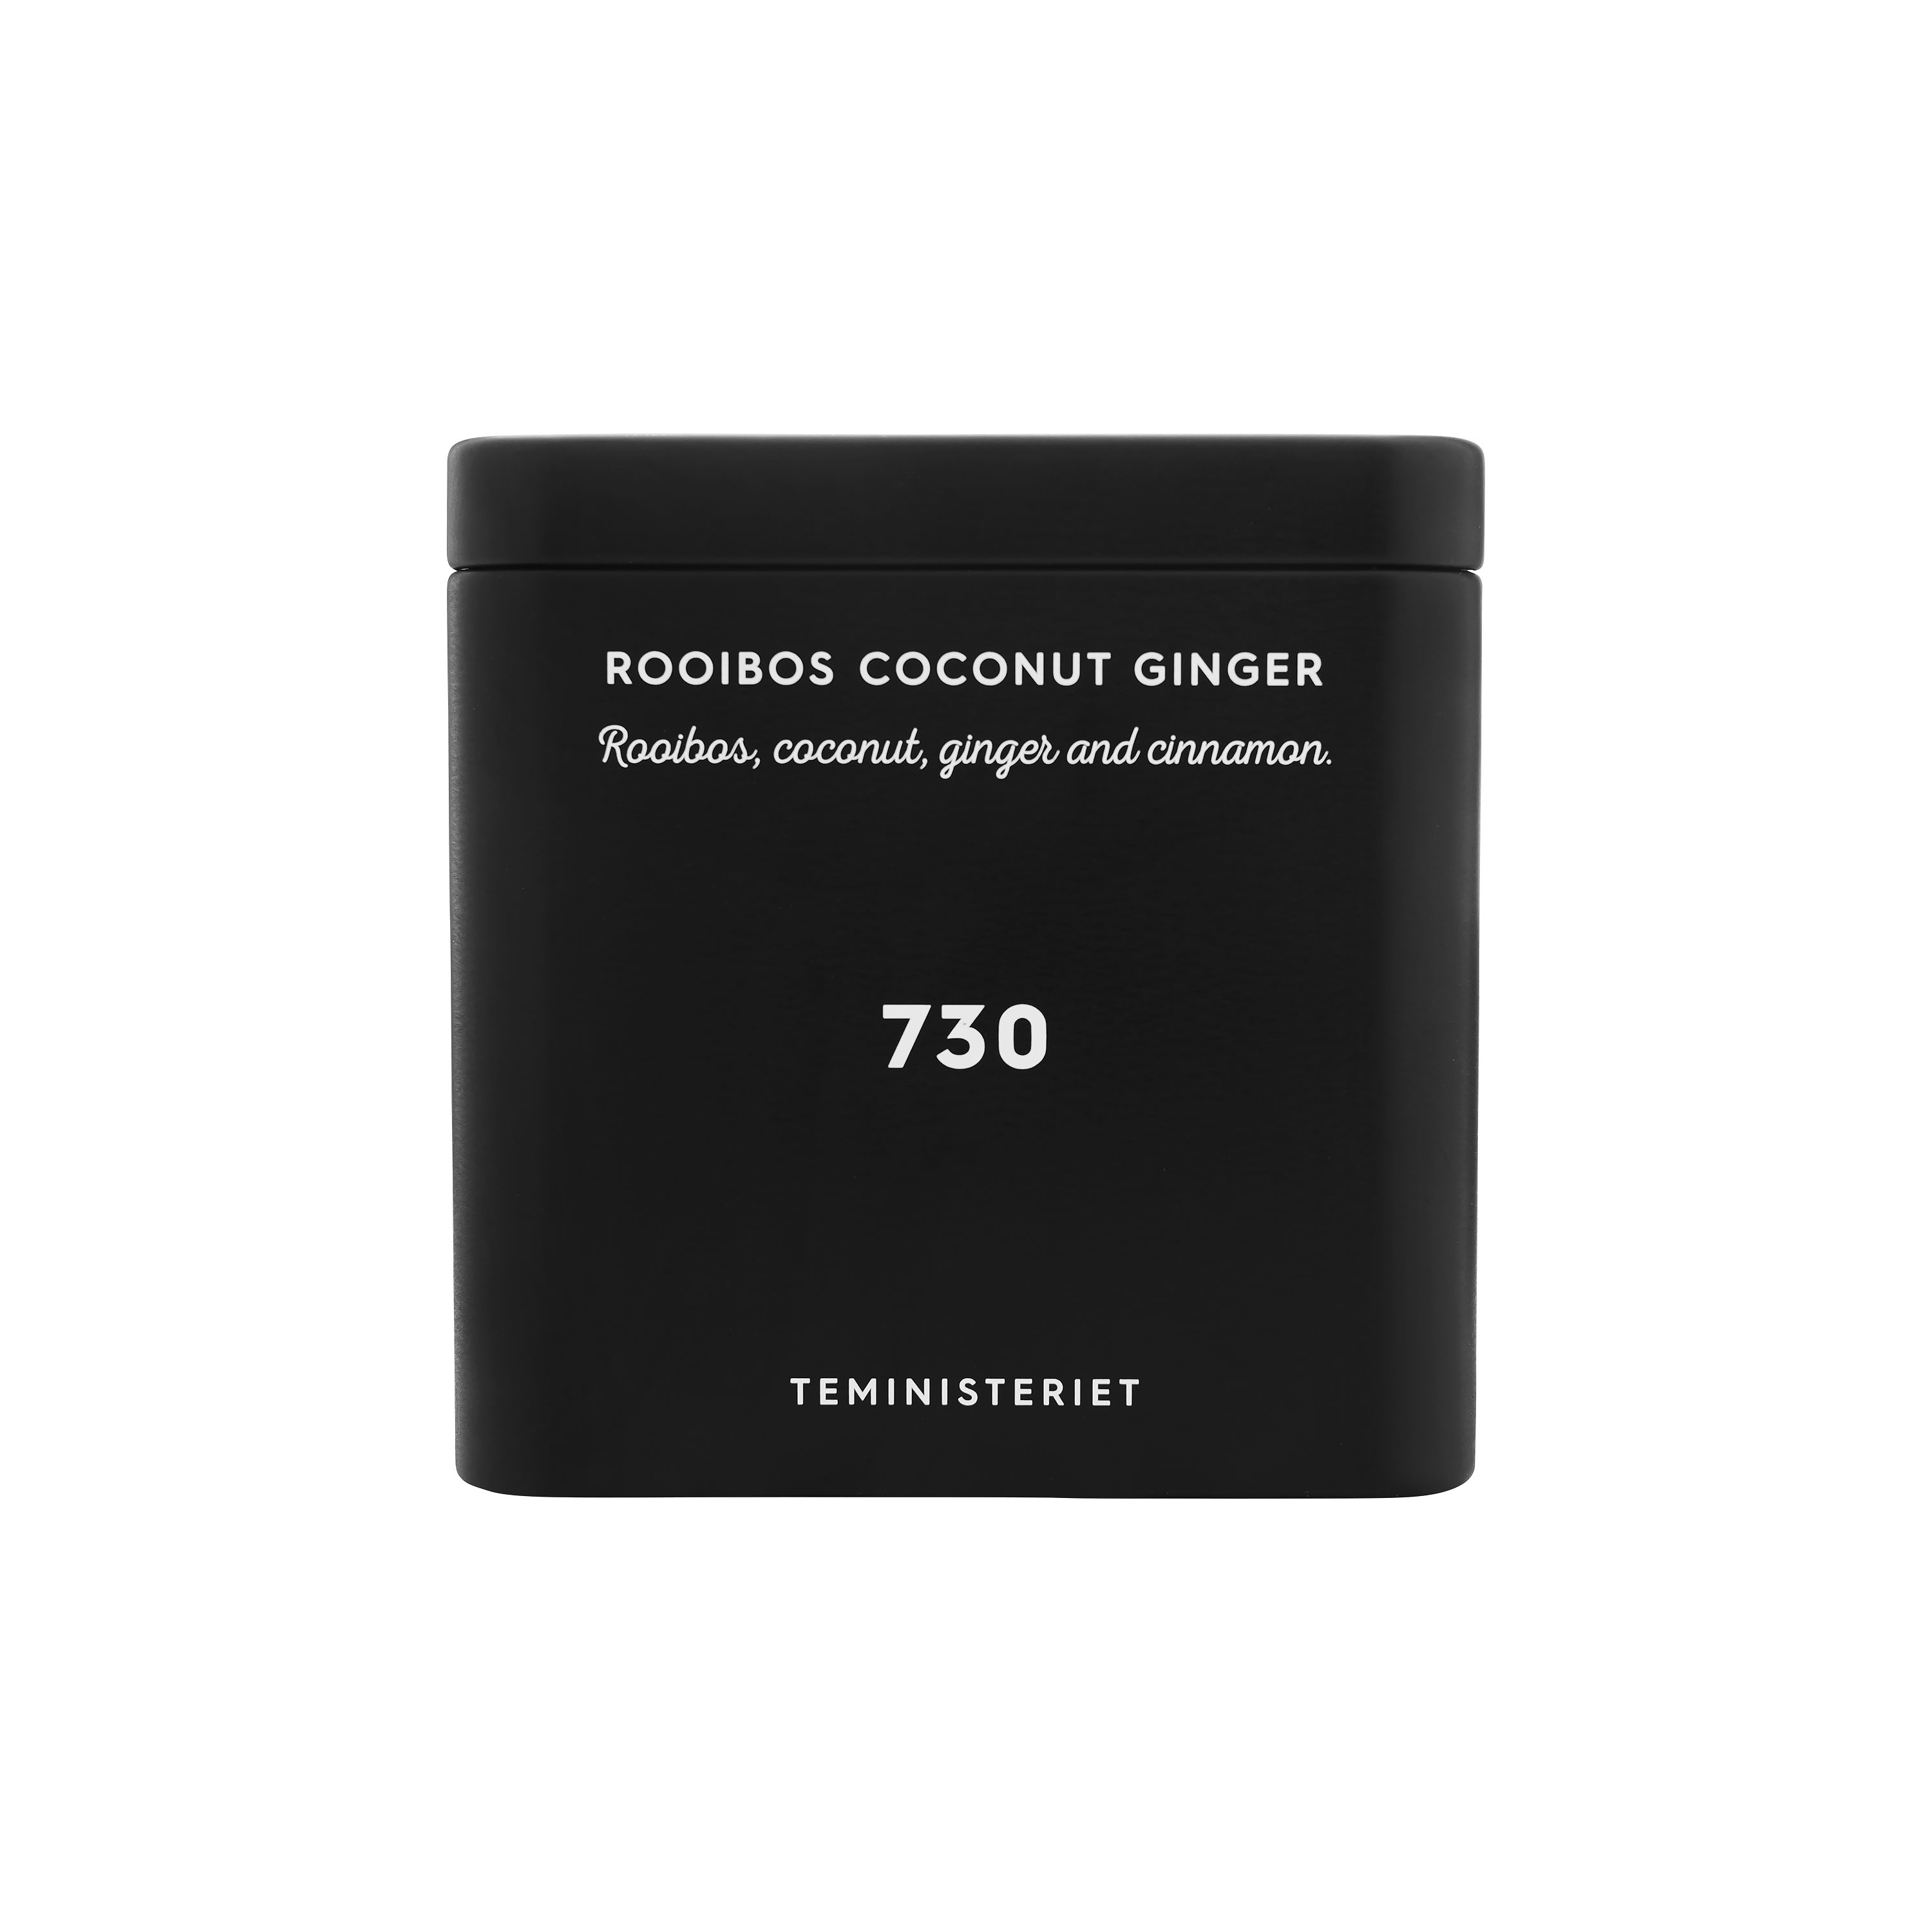 Tea - 730 rooibos coconut ginger i lösvikt, svart metallbox